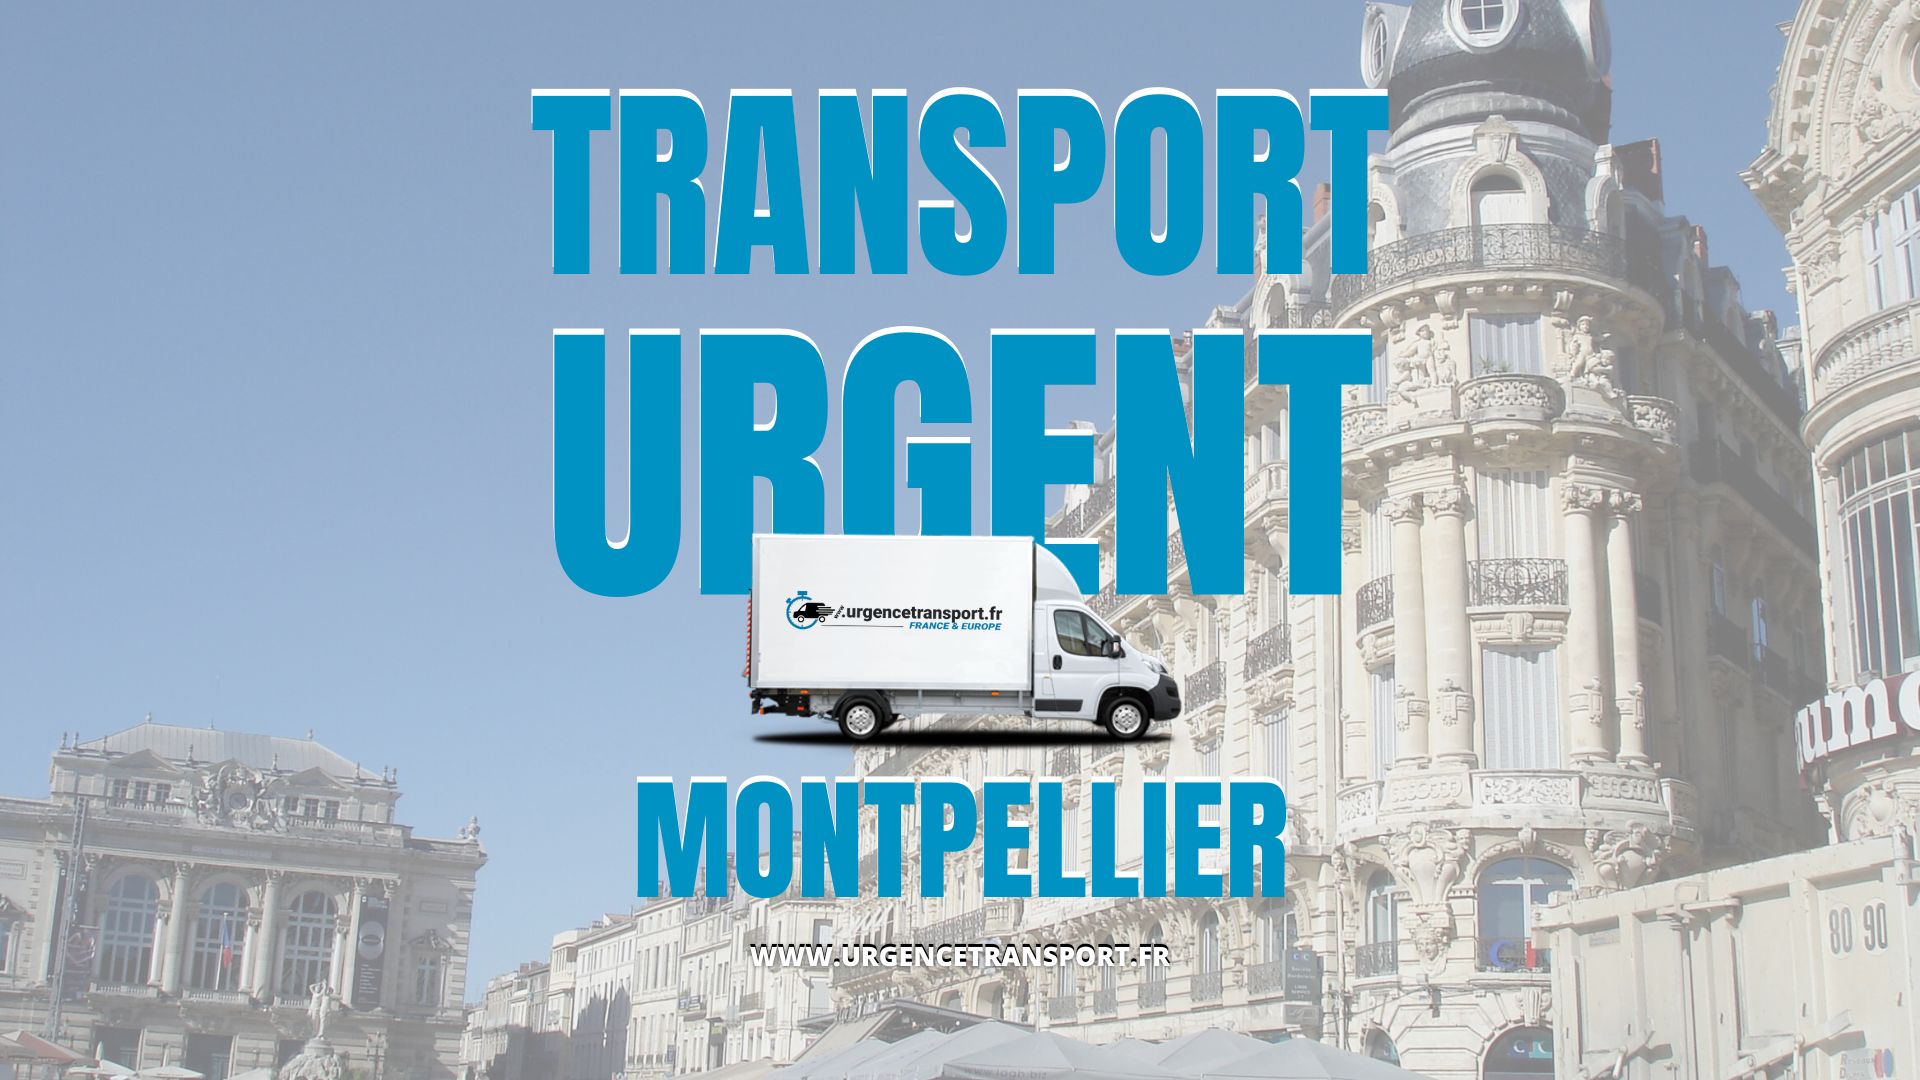 Transport urgent montpellier